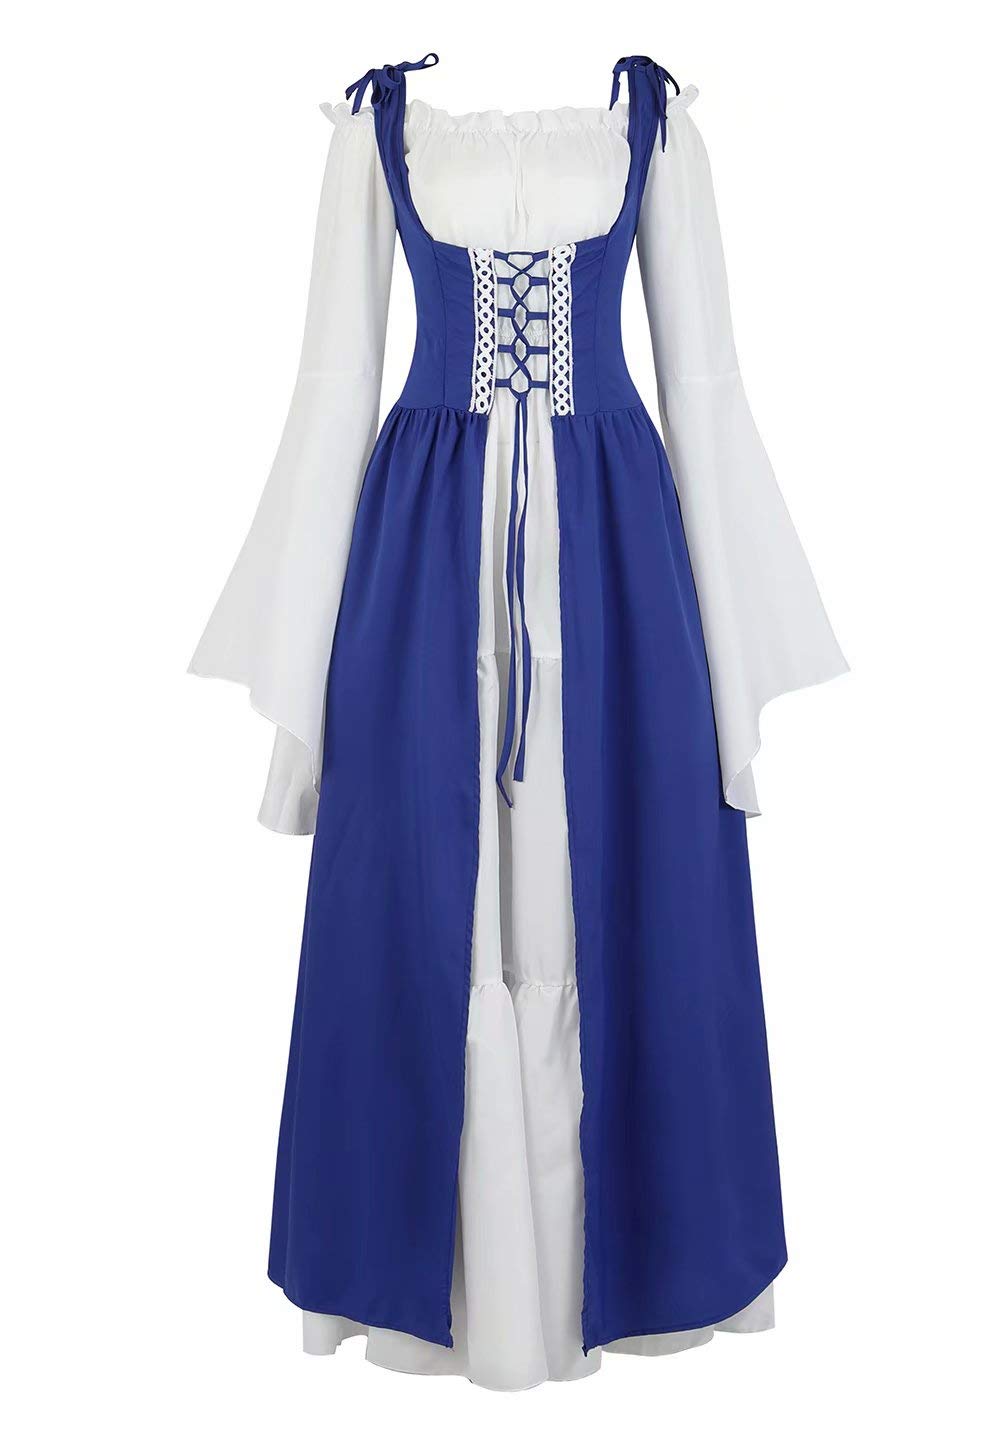 Josamogre Mittelalter Kleidung Damen Kleid renaissance mit Trompetenärmel Party Kostüm bodenlang Vintage Retro costume cosplay Blau M